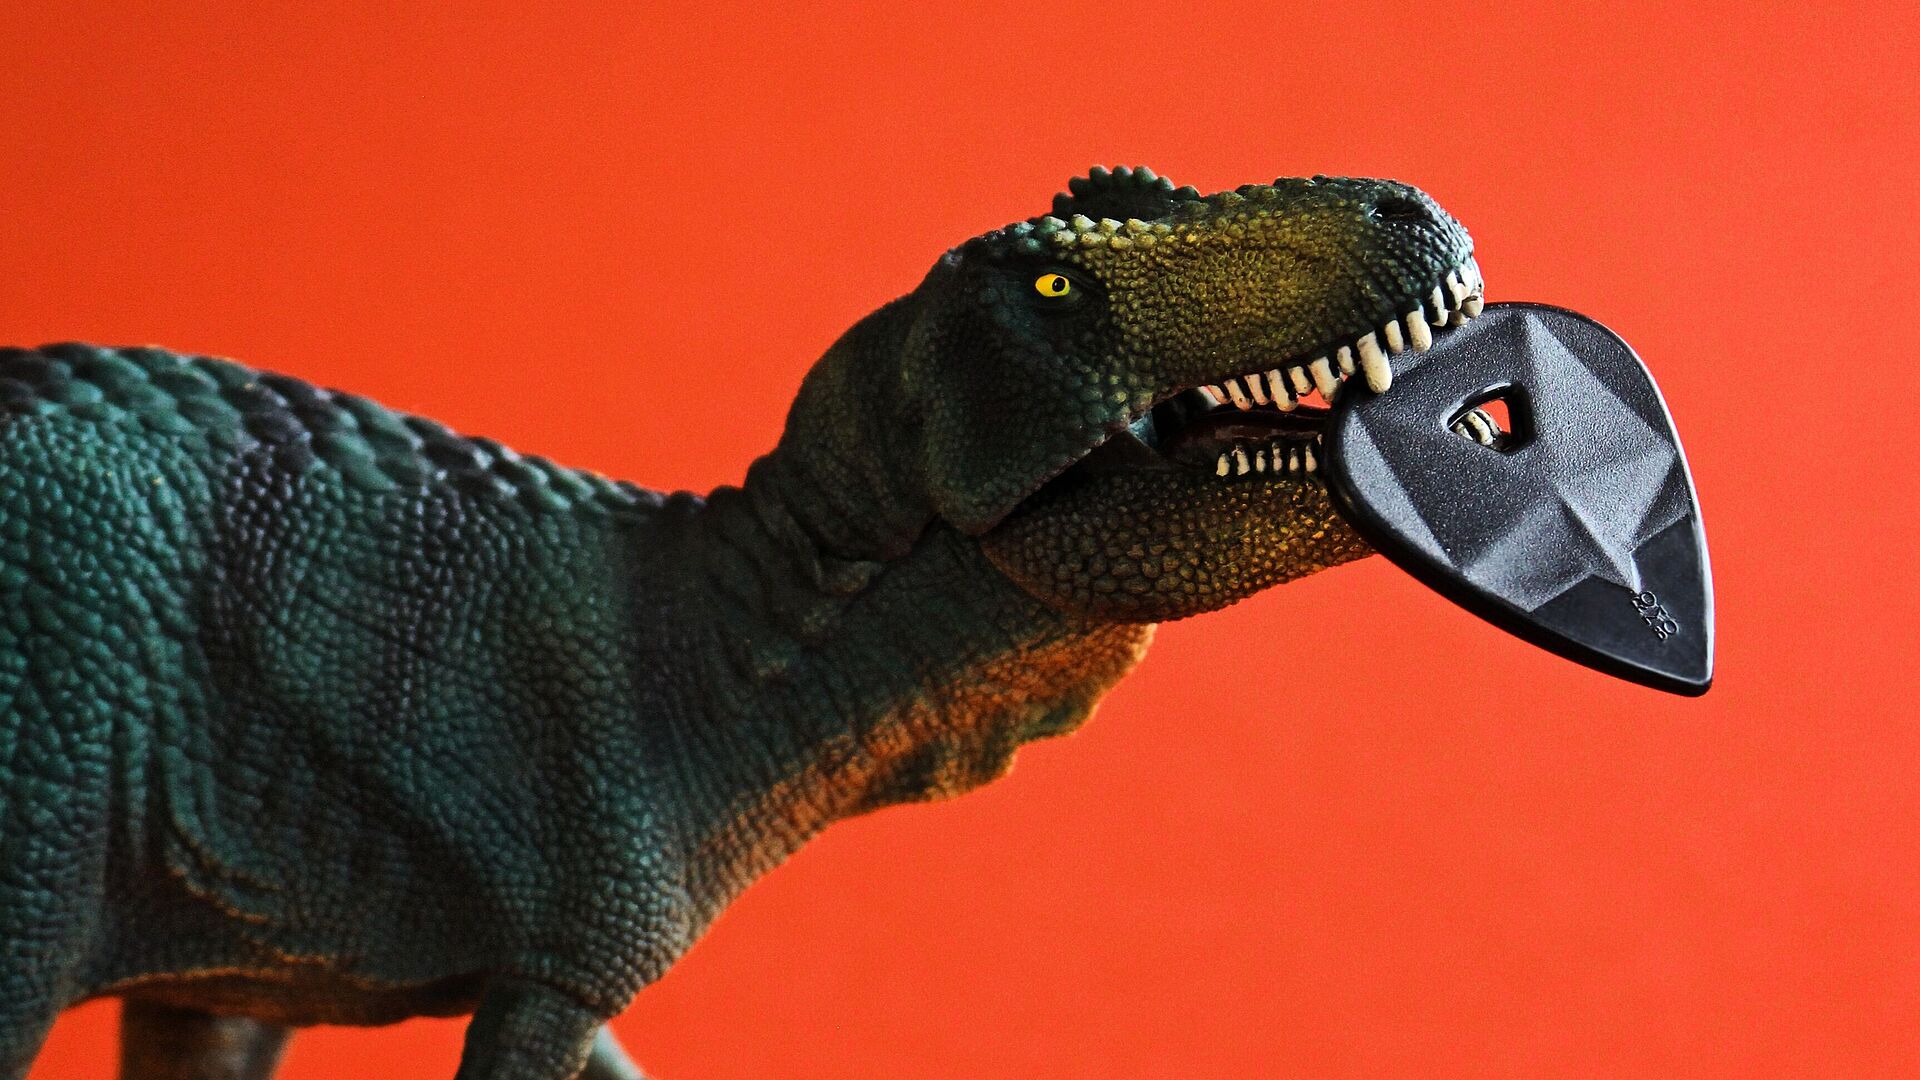 T-Rex Spielzeugfigur